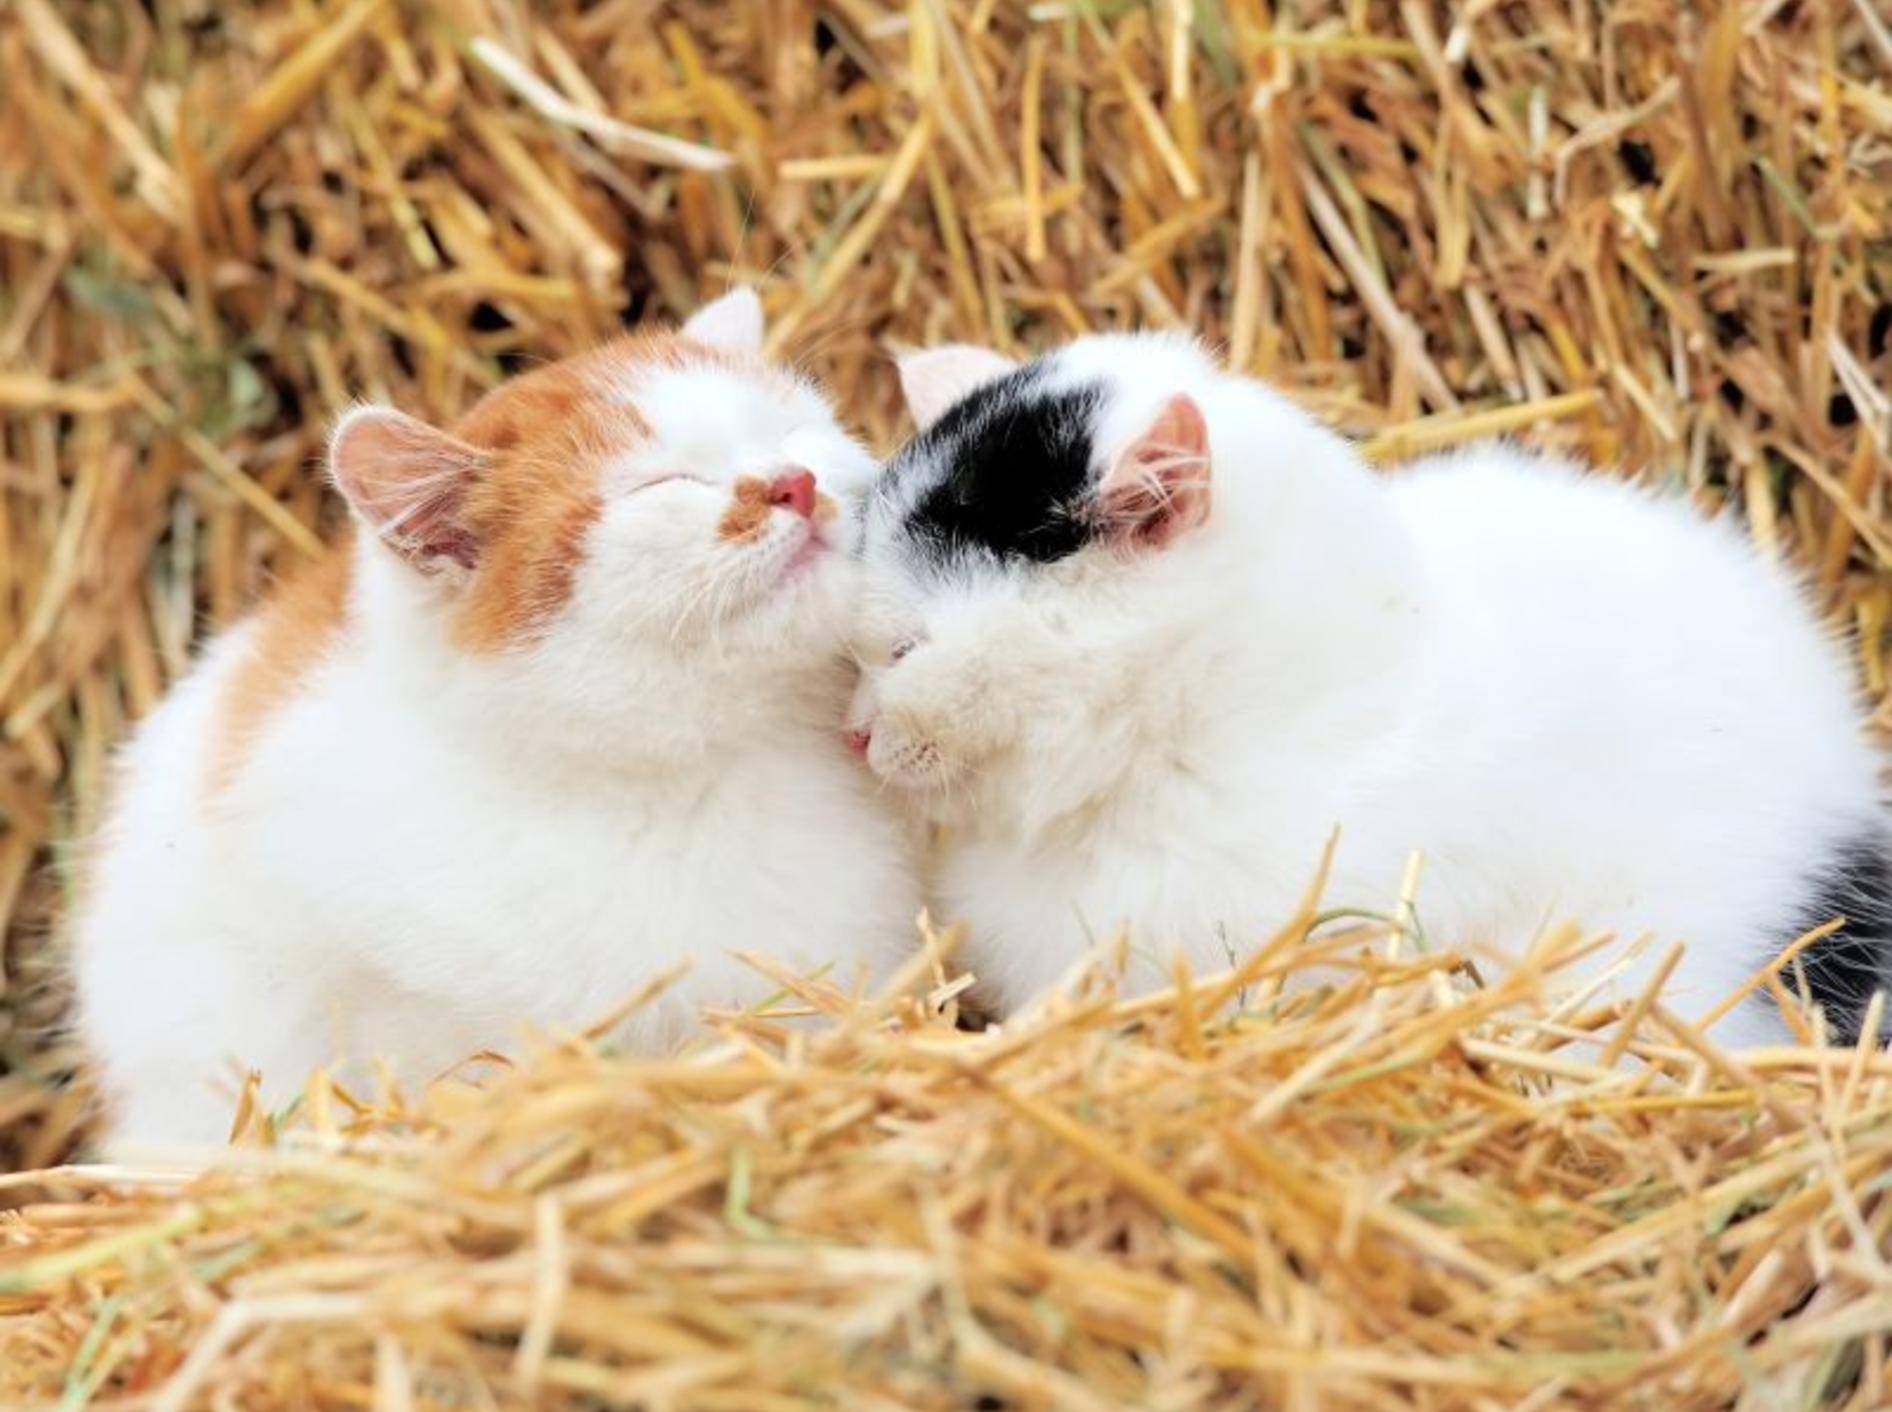 Flauschige Katzen: Im Stroh liegen, das ist schön! – Bild: Shutterstock / Volodymyr-Burdiak